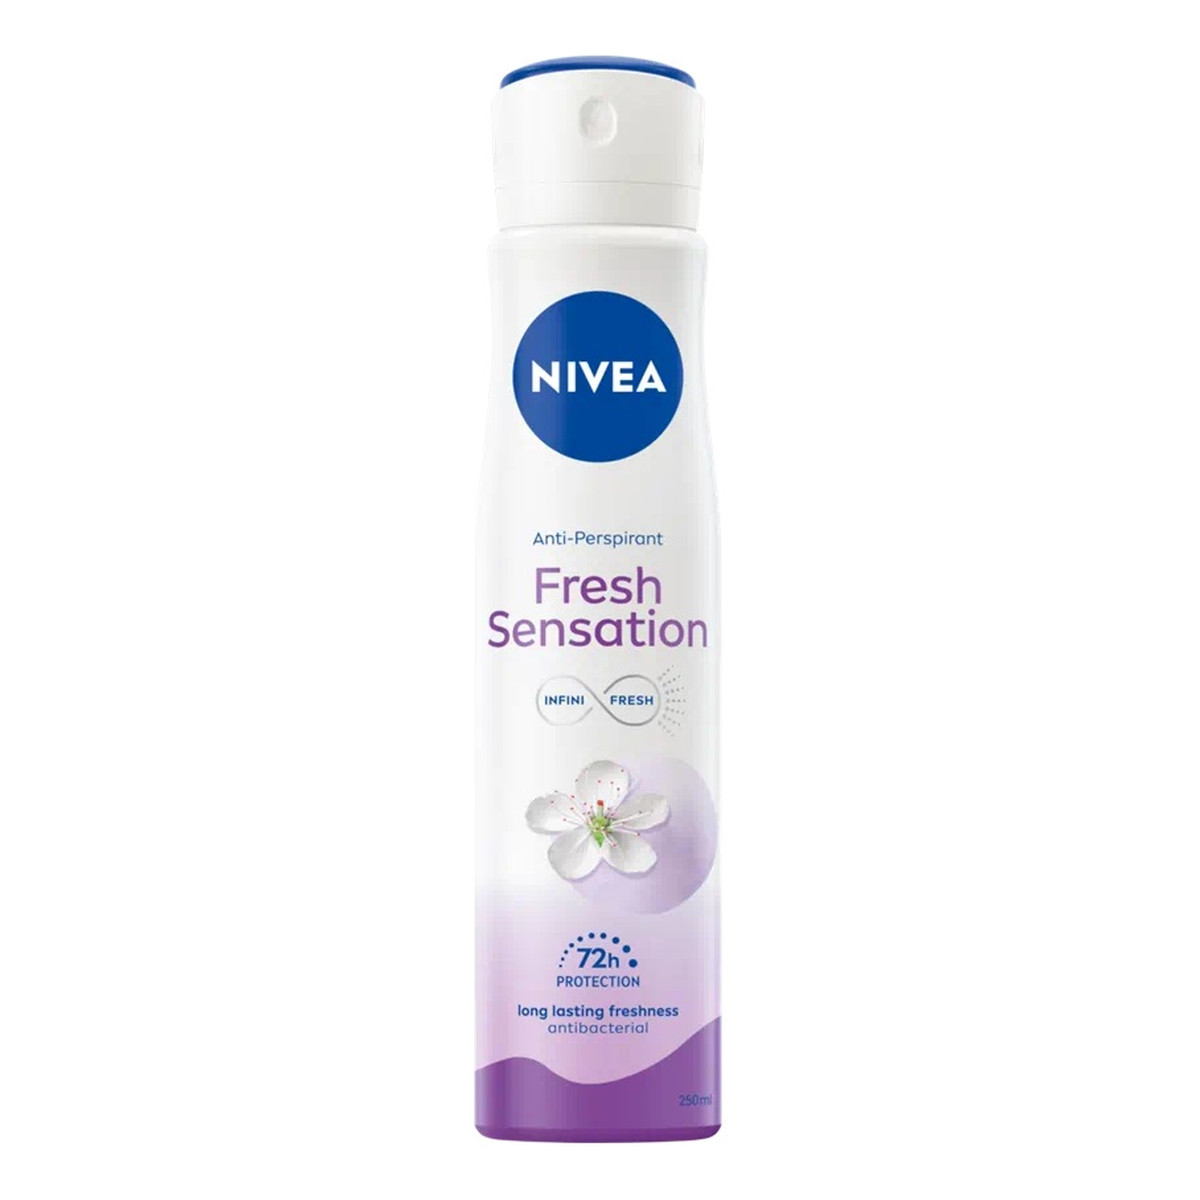 Nivea Fresh sensation antyperspirant spray 250ml